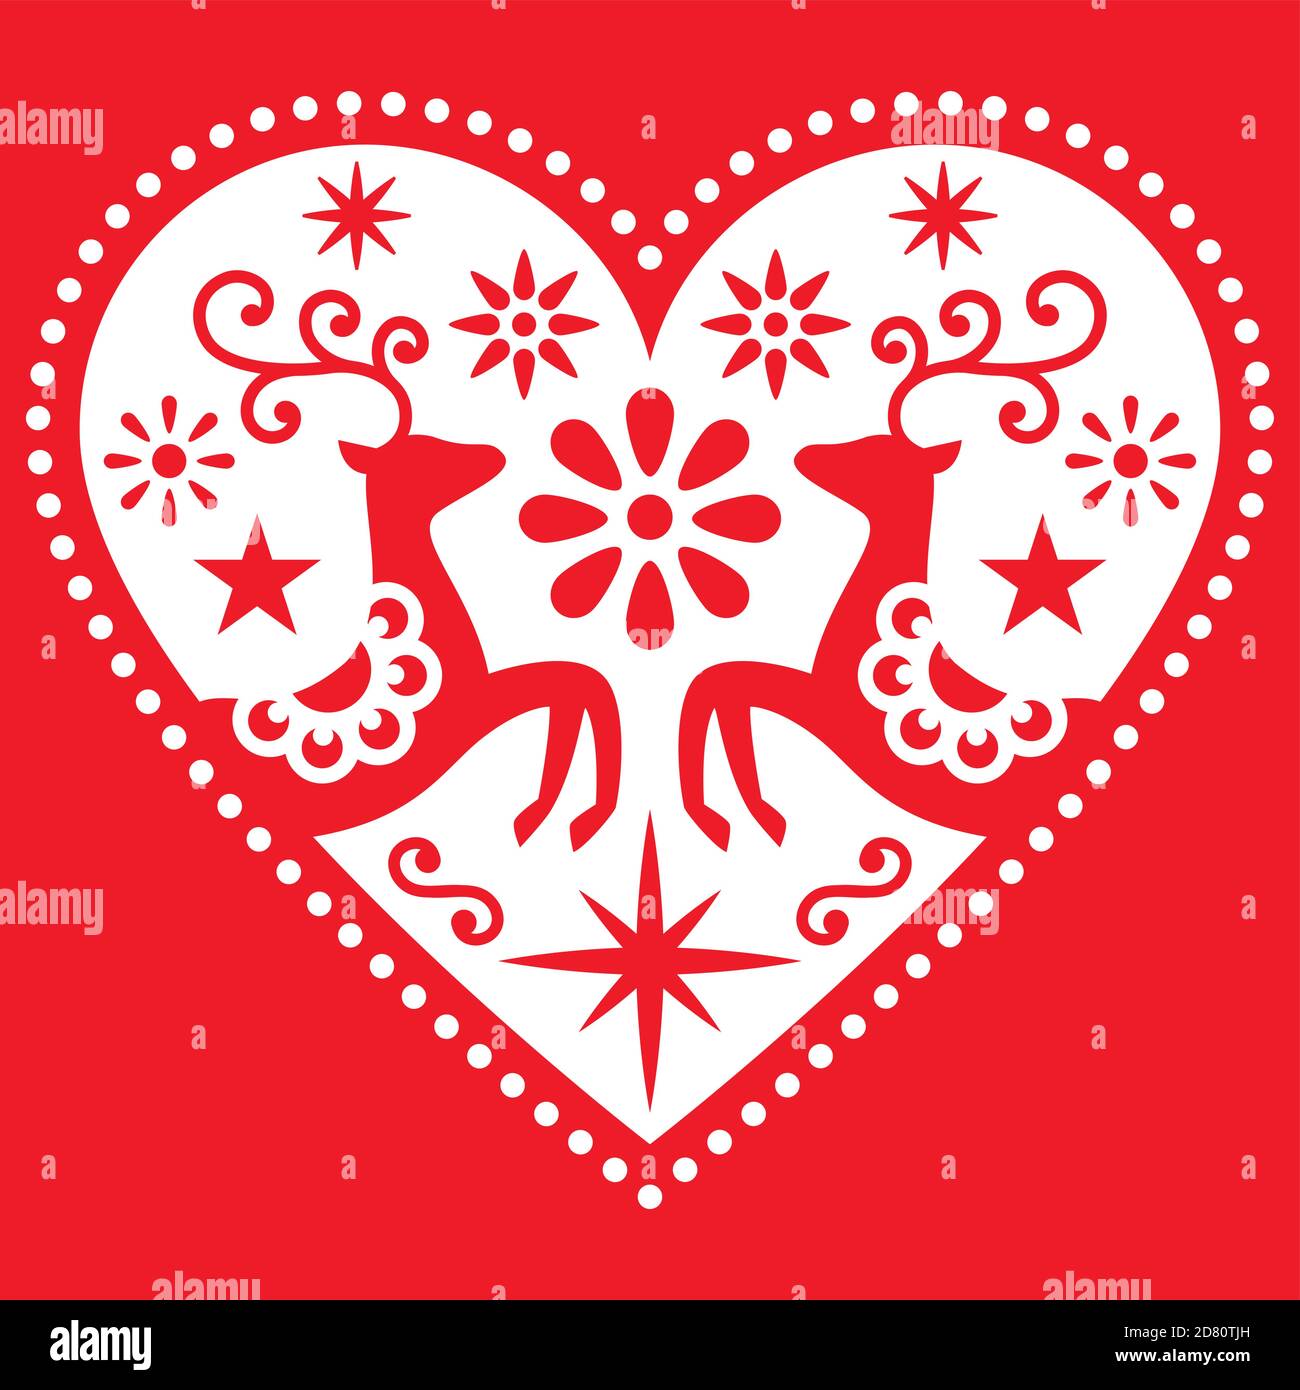 Weihnachten Volkskunst Herz mit Hirsch Vektor rot Grußkarte Design, skandinavischen Retro-Stil fröhliche Muster mit Blumen und Sternen Stock Vektor